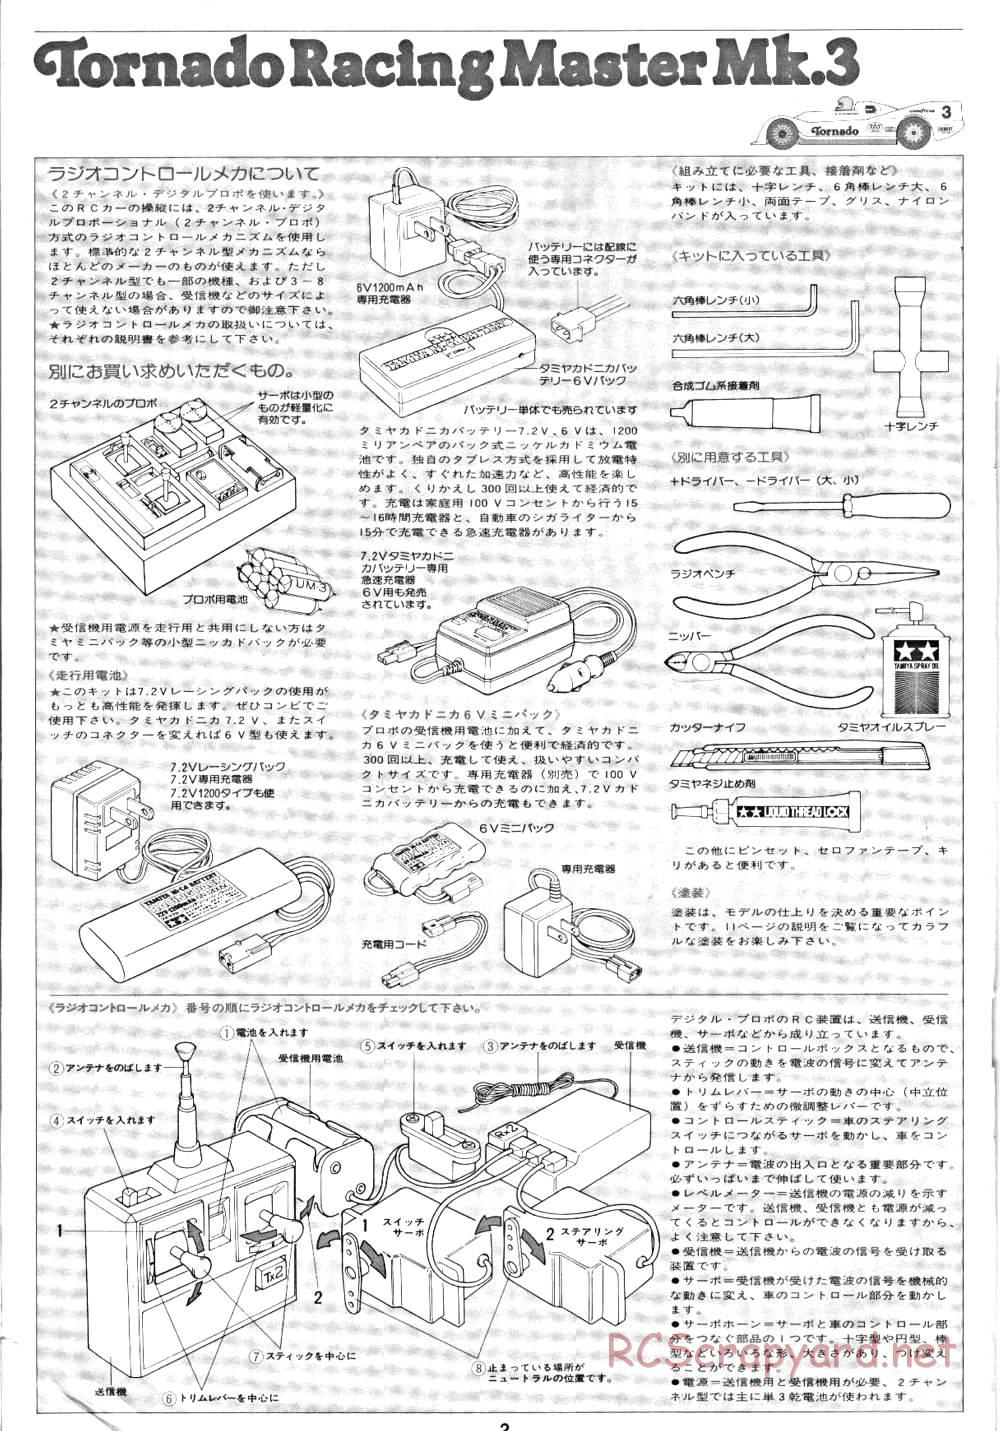 Tamiya - Tornado - RM MK.3 - 58032 - Manual - Page 2